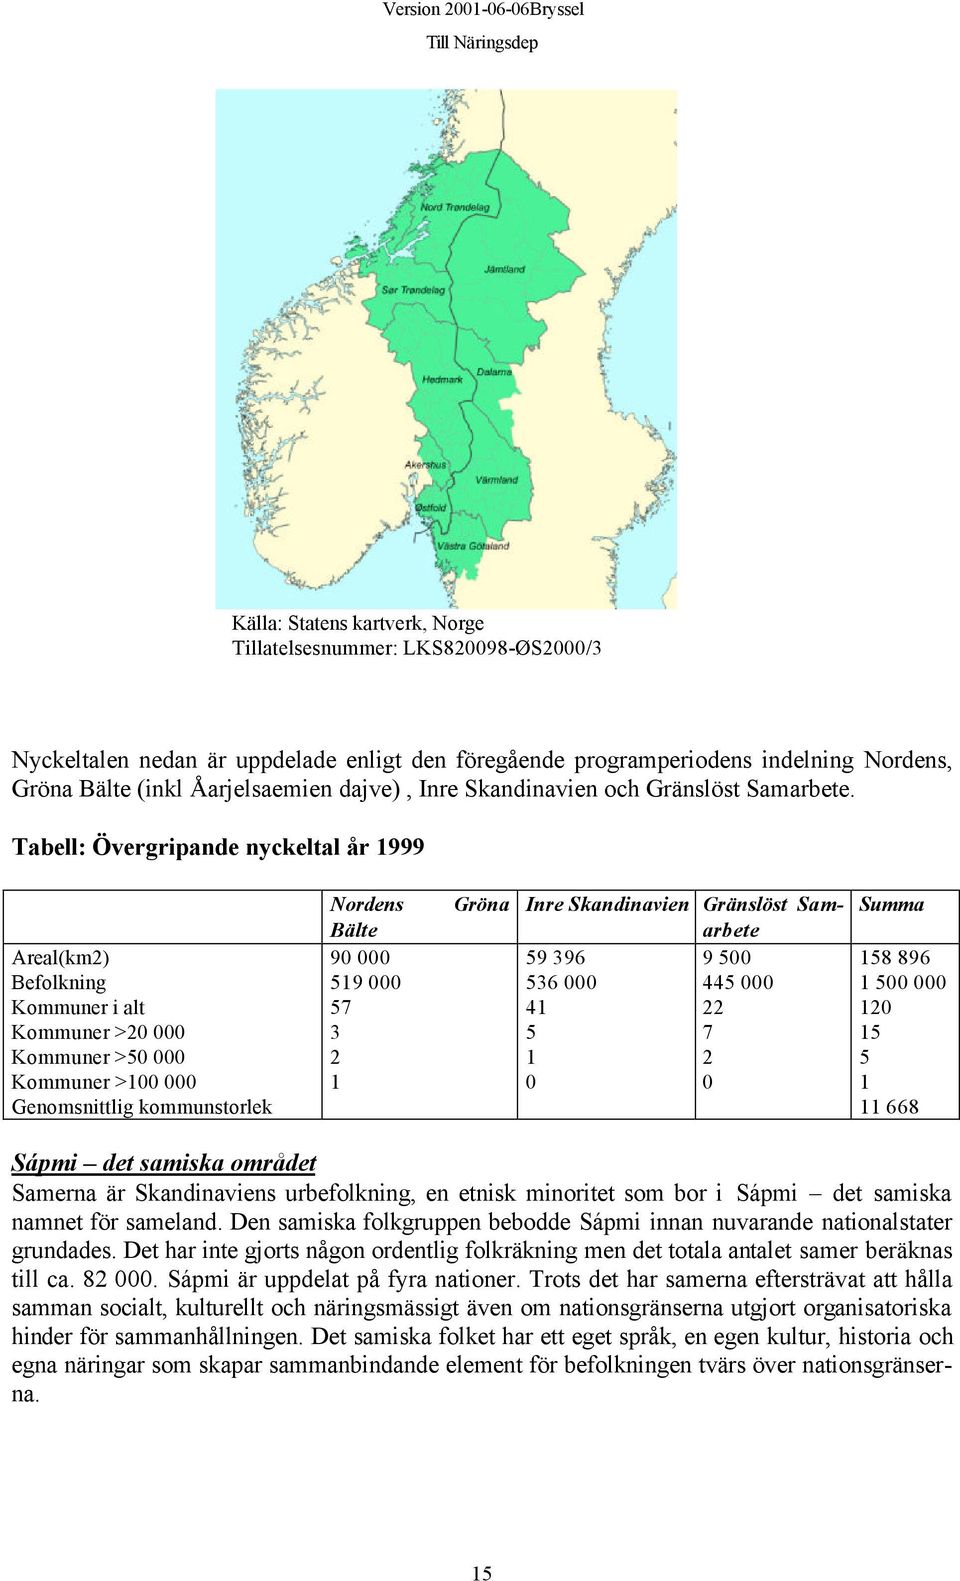 Tabell: Övergripande nyckeltal år 1999 Nordens Gröna Inre Skandinavien Gränslöst Samarbete Summa Bälte Areal(km2) 90 000 59 396 9 500 158 896 Befolkning 519 000 536 000 445 000 1 500 000 Kommuner i